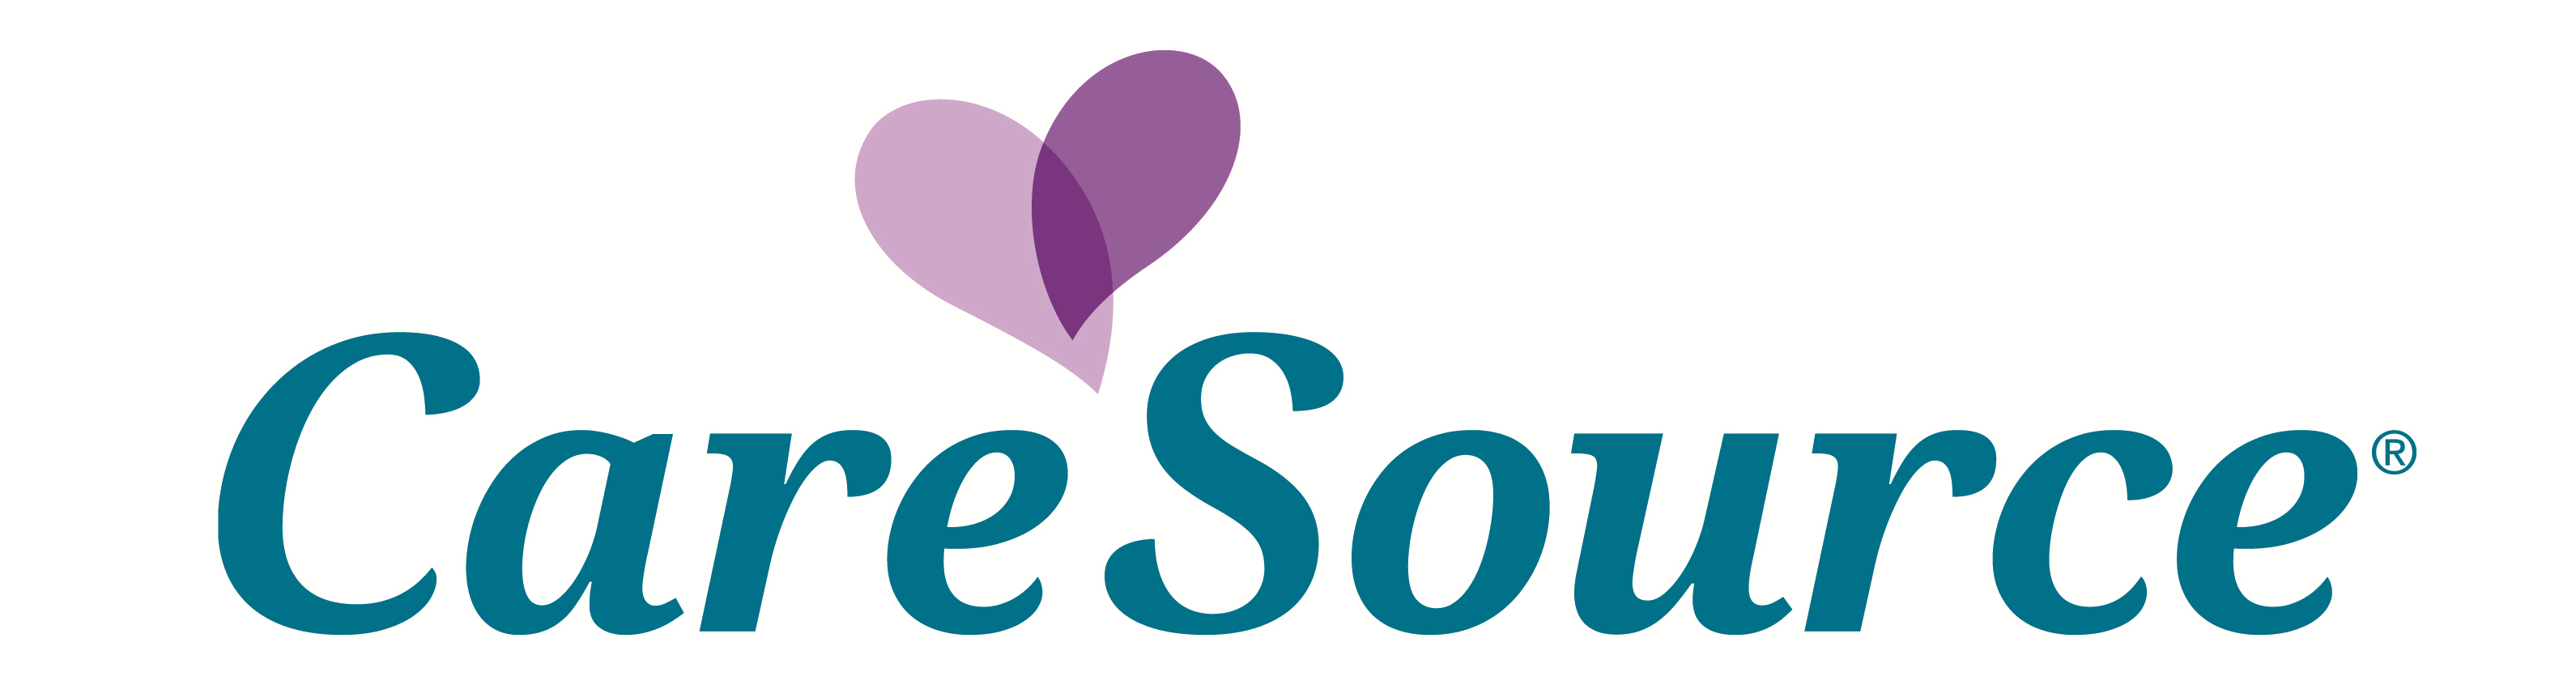 caresource logo